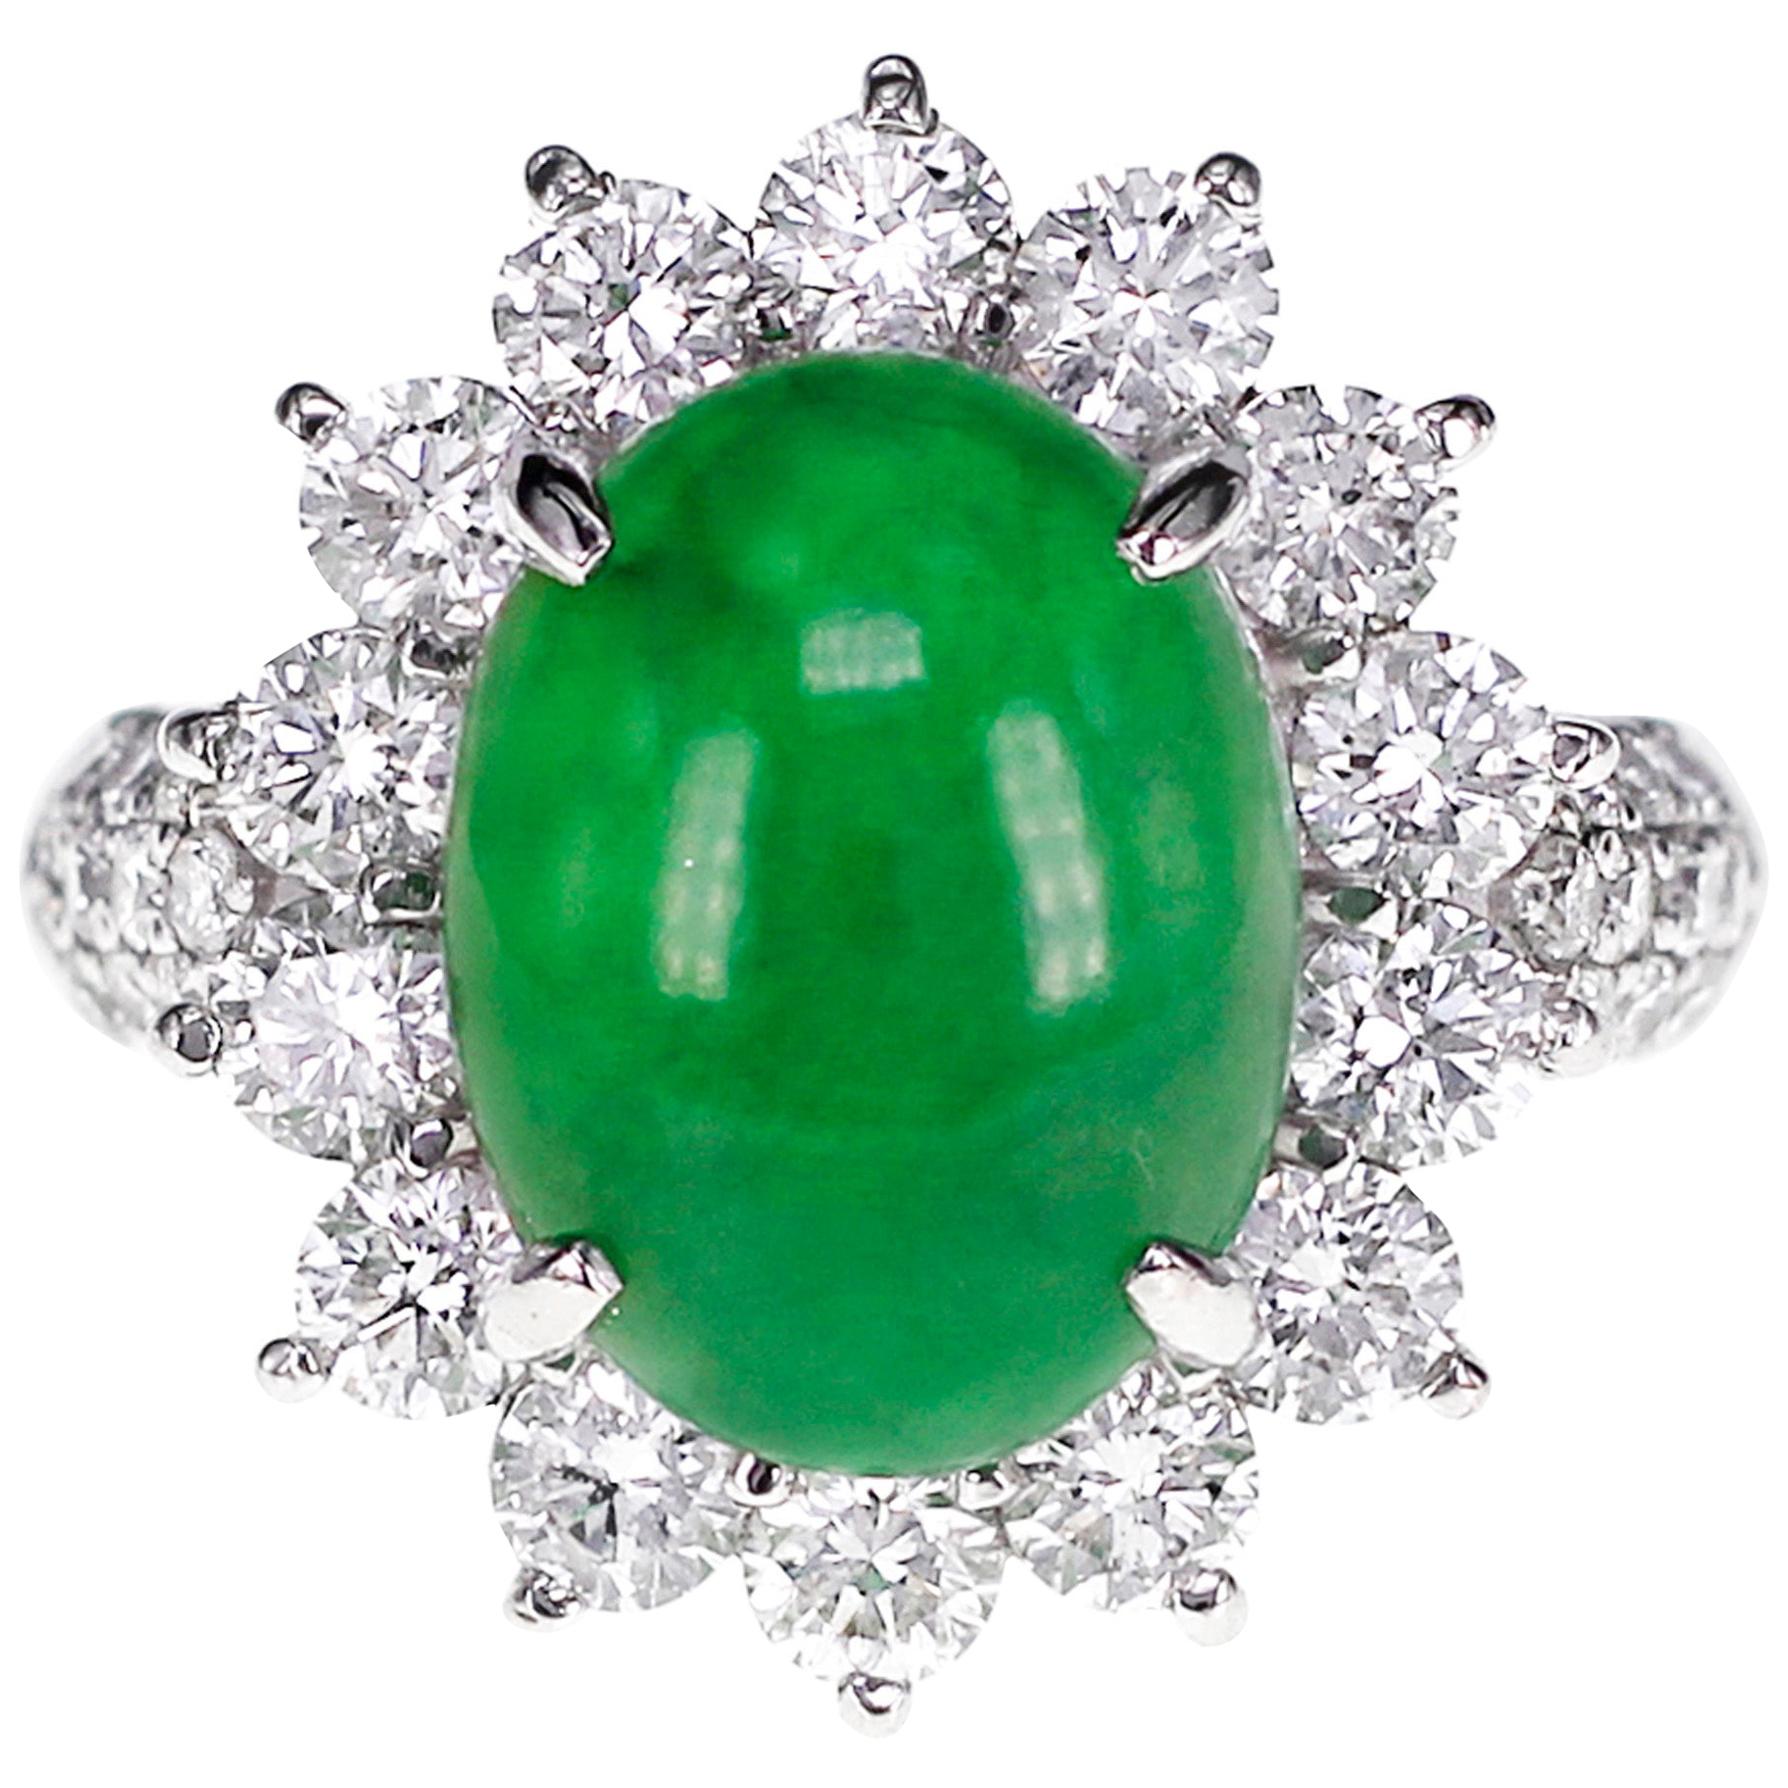 CGL Japan Lab Certified 5.18 Carat Jadeite 'Jade' and Diamond Wedding Ring